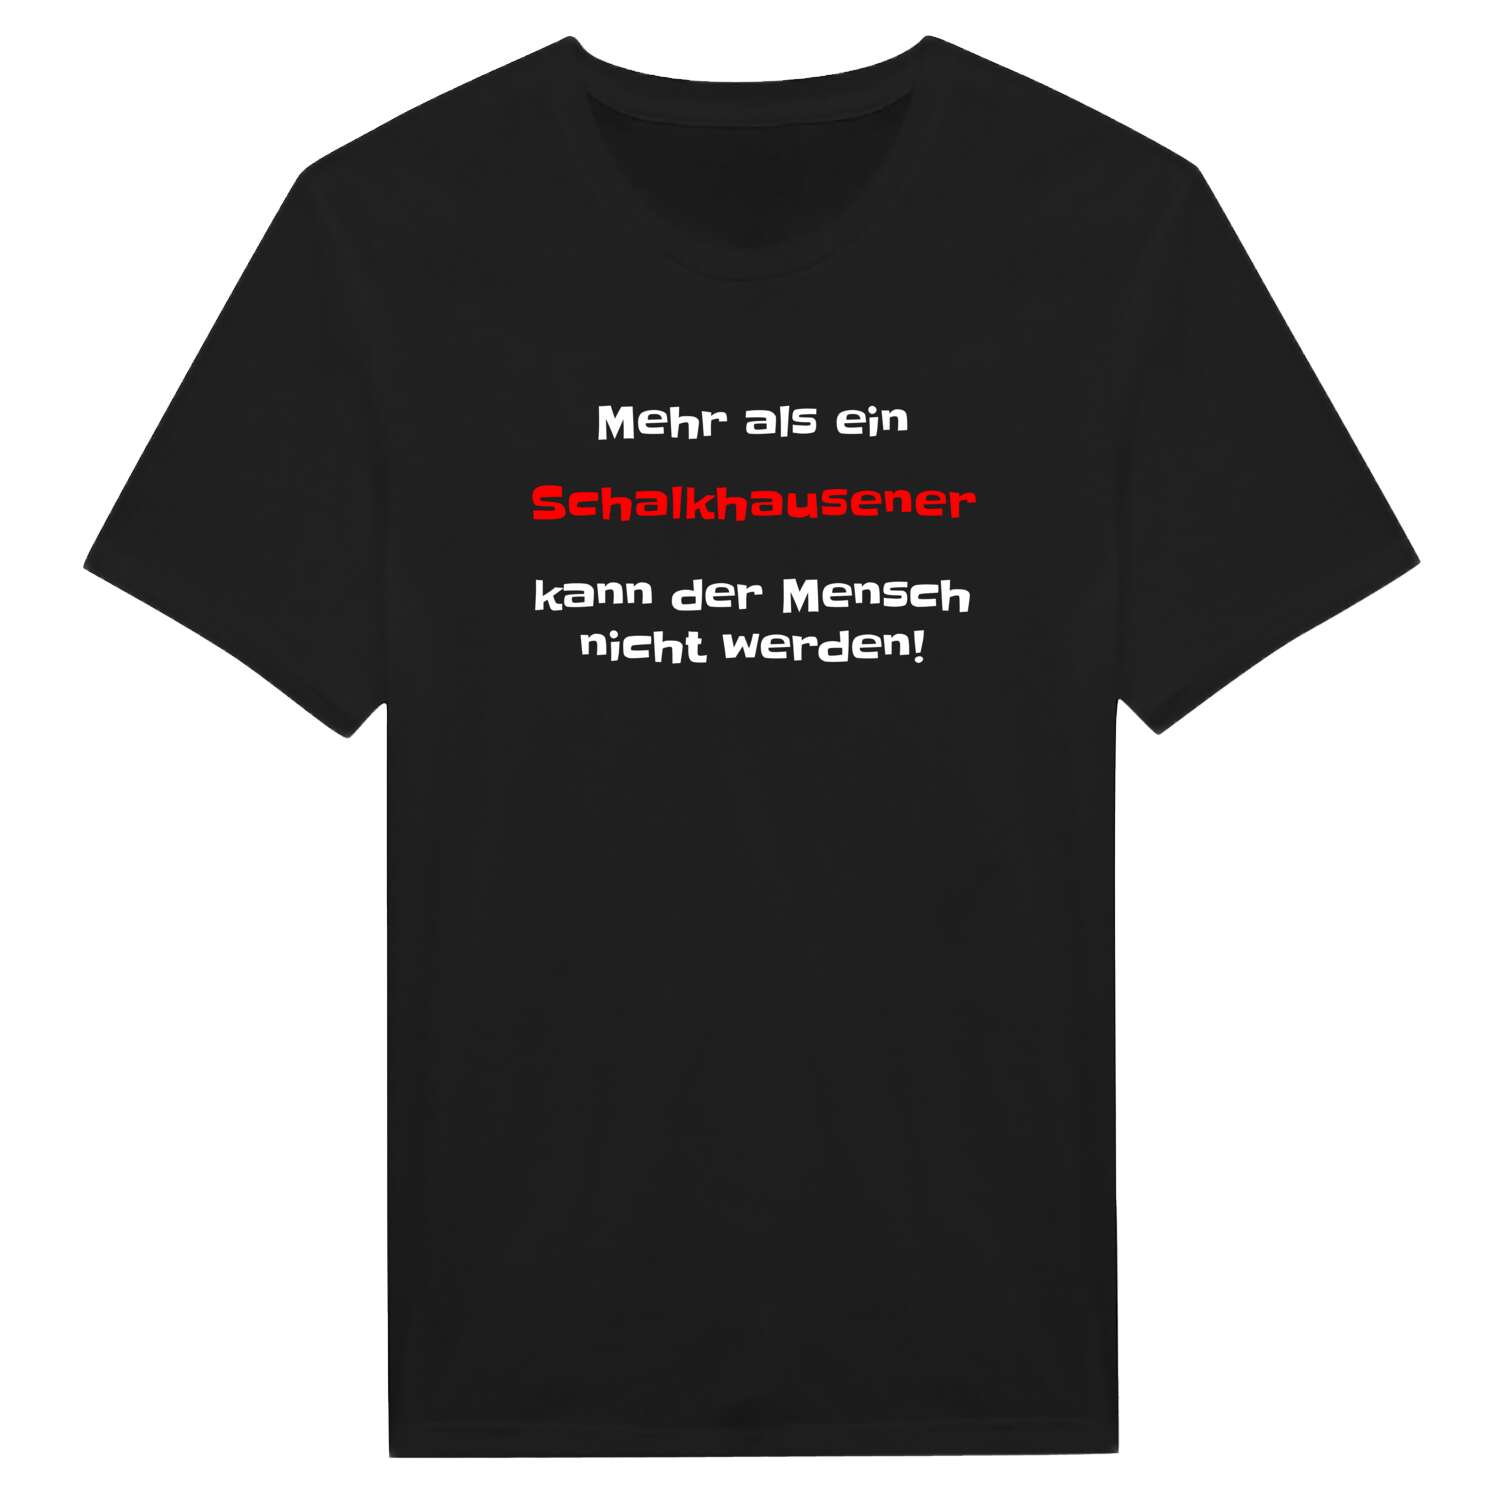 Schalkhausen T-Shirt »Mehr als ein«